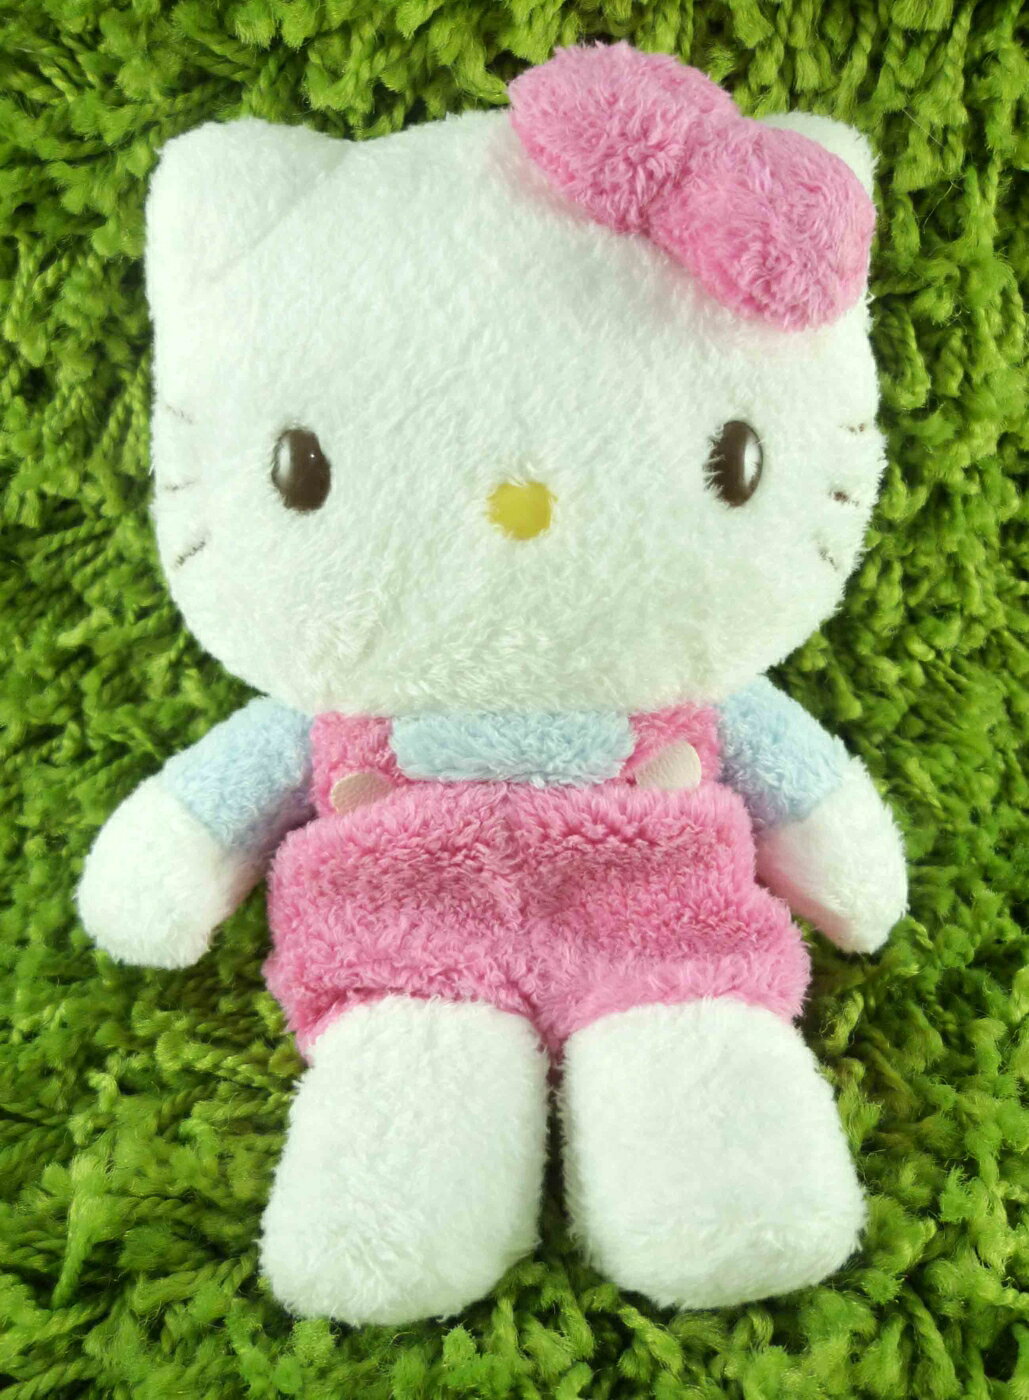 【震撼精品百貨】Hello Kitty 凱蒂貓 KITTY絨毛娃娃-桃粉吊帶 震撼日式精品百貨